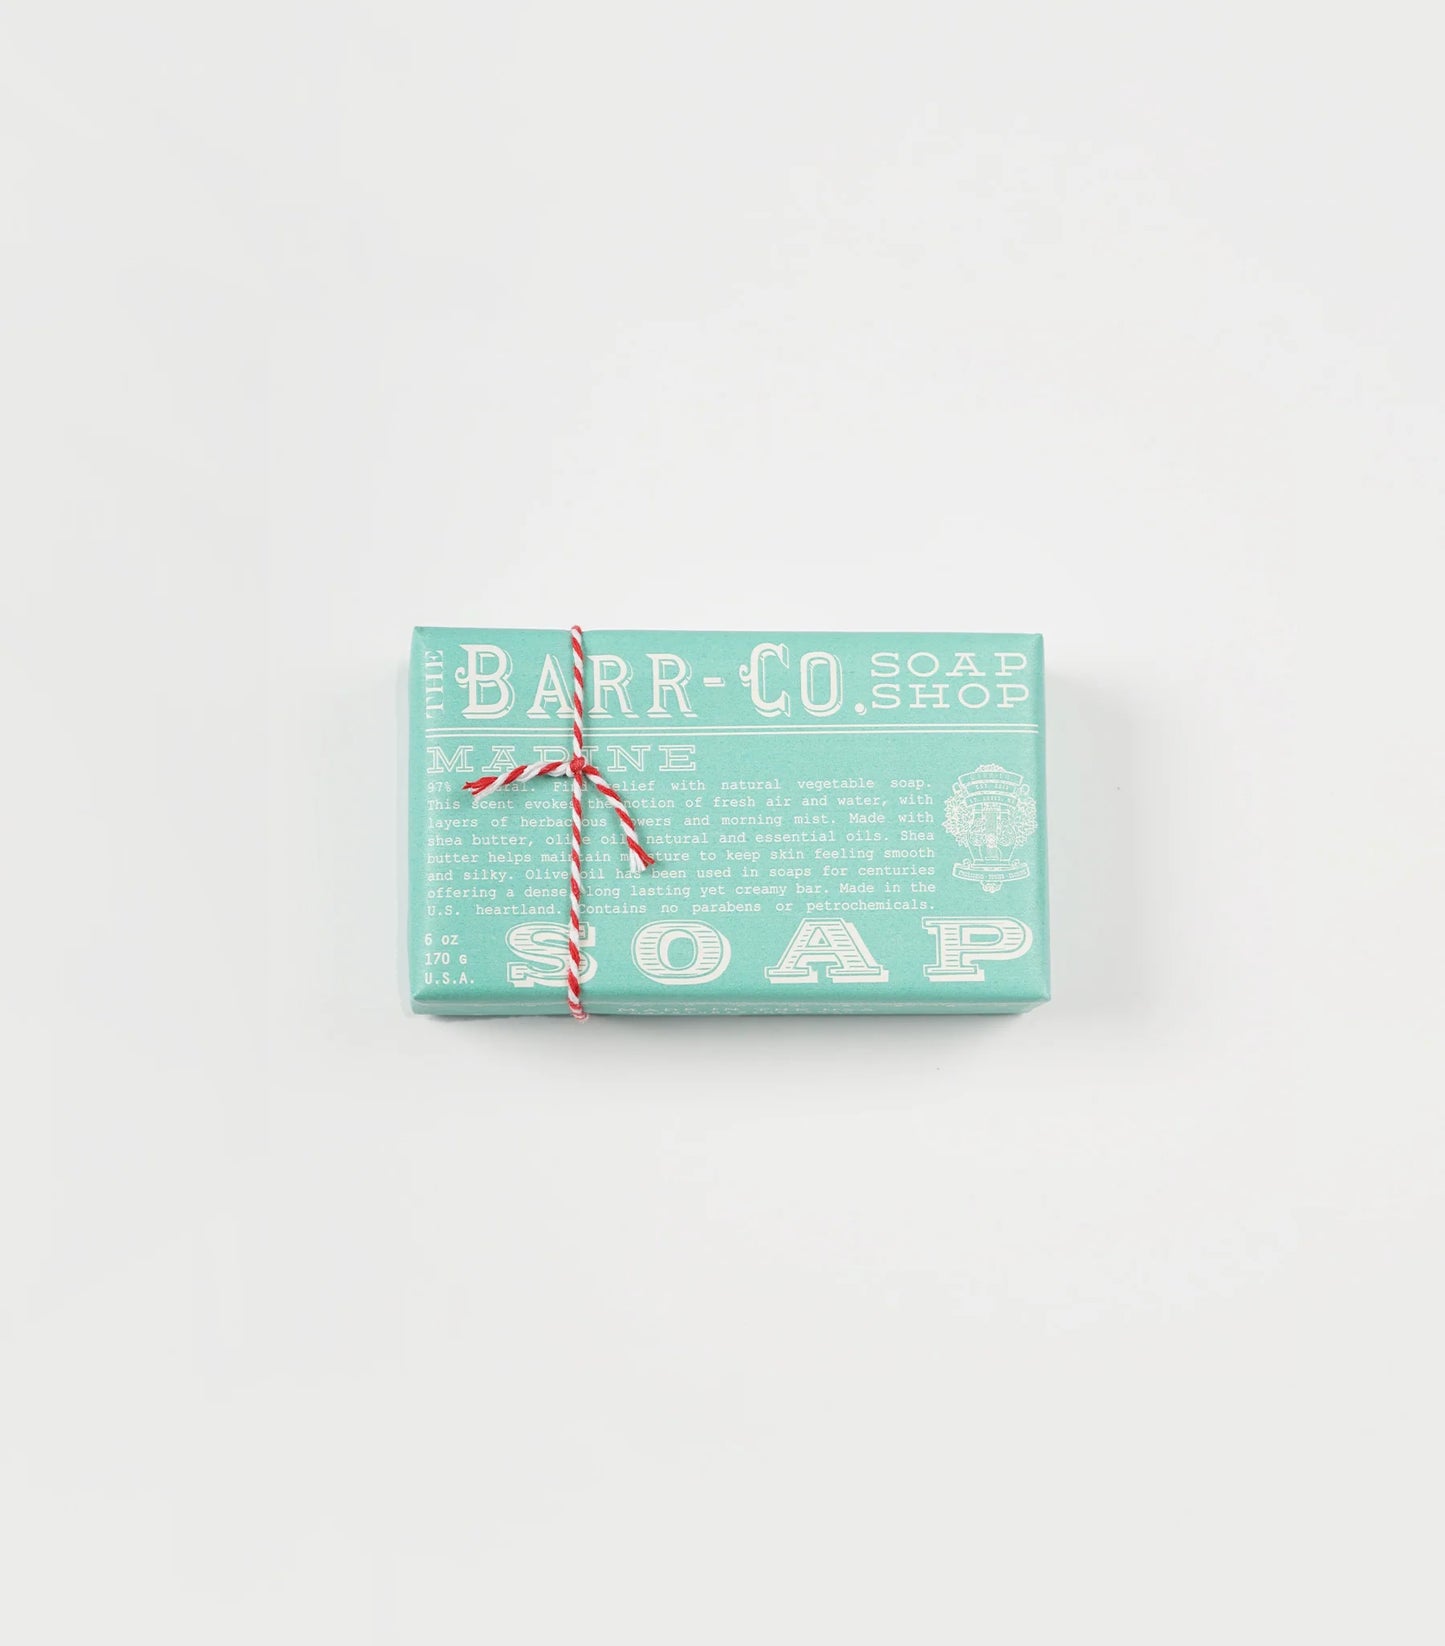 Barr Co- Bar Soap.